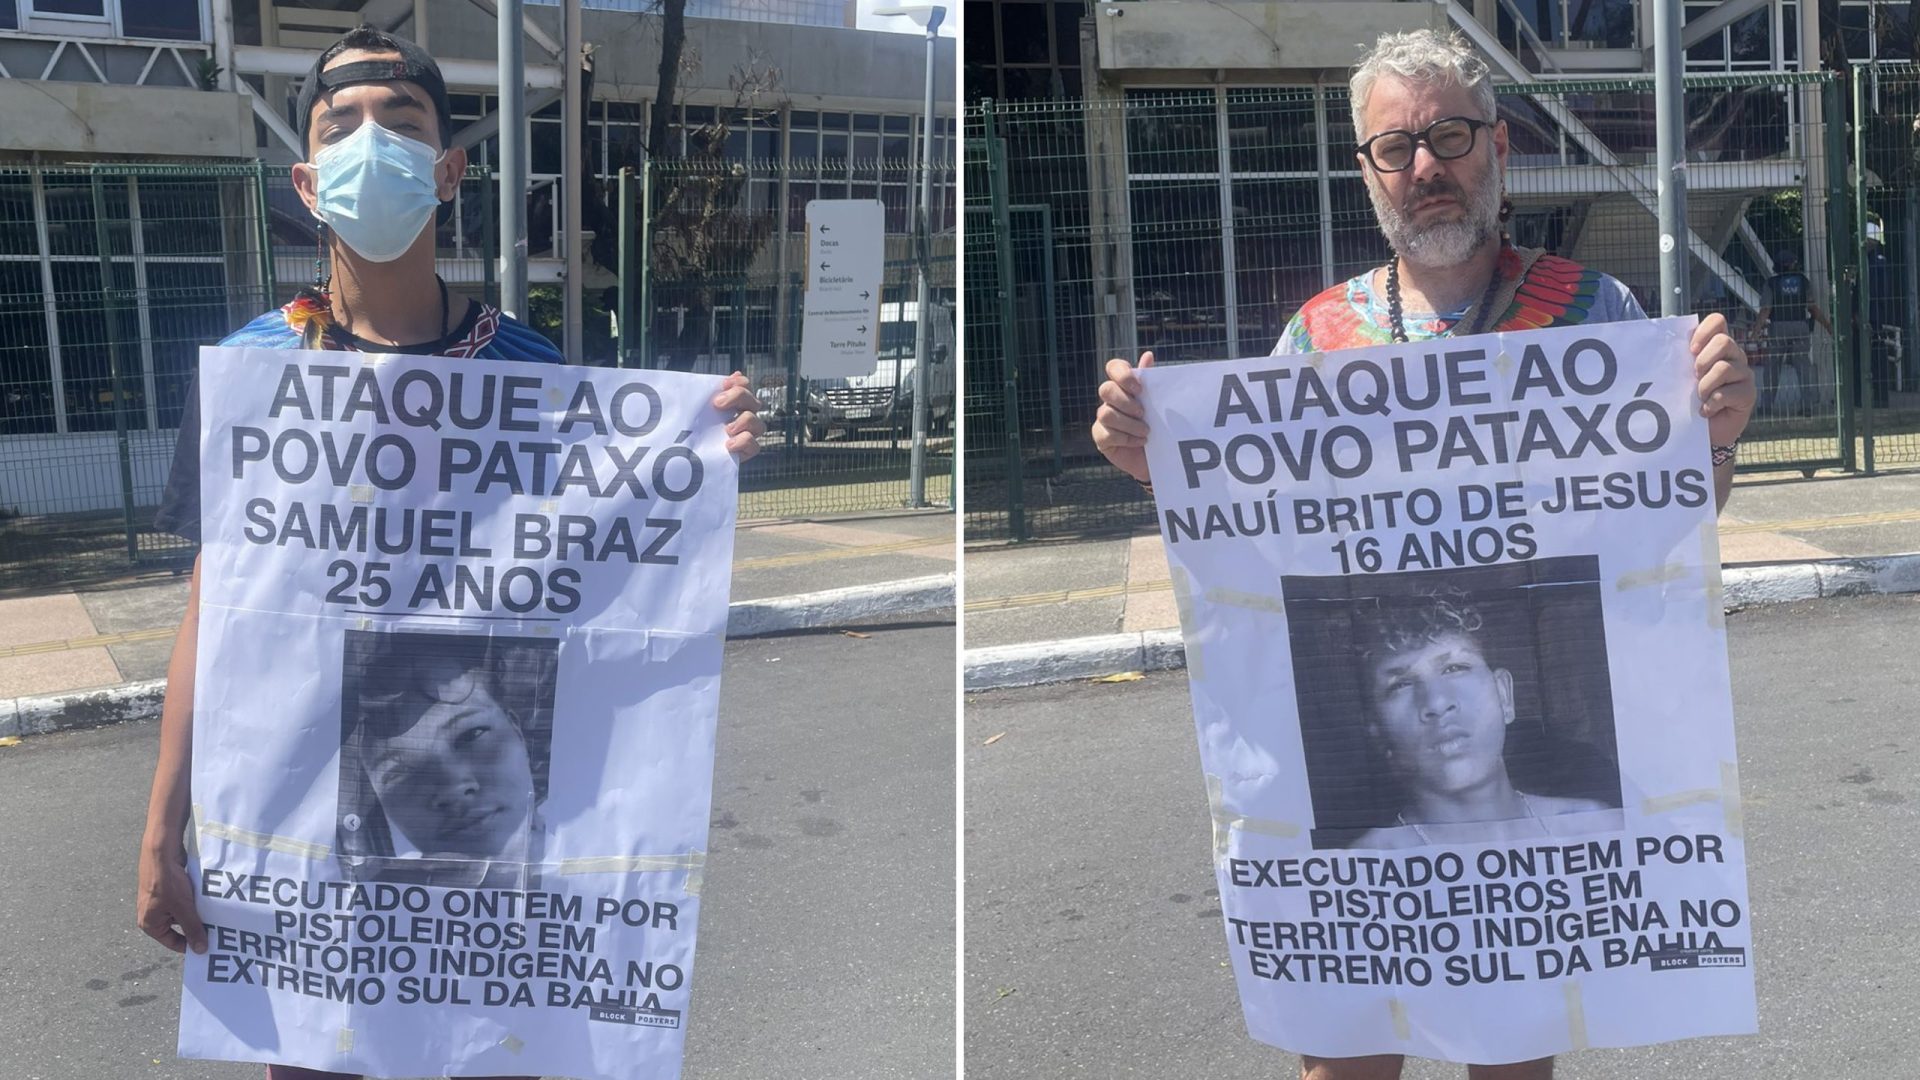 Gabinete de Crise - Ato em frente à Polícia Federal exigindo justiça pelos assassinatos no extremo sul da Bahia - Foto: Reprodução/Twitter@FelipeBrunoMF